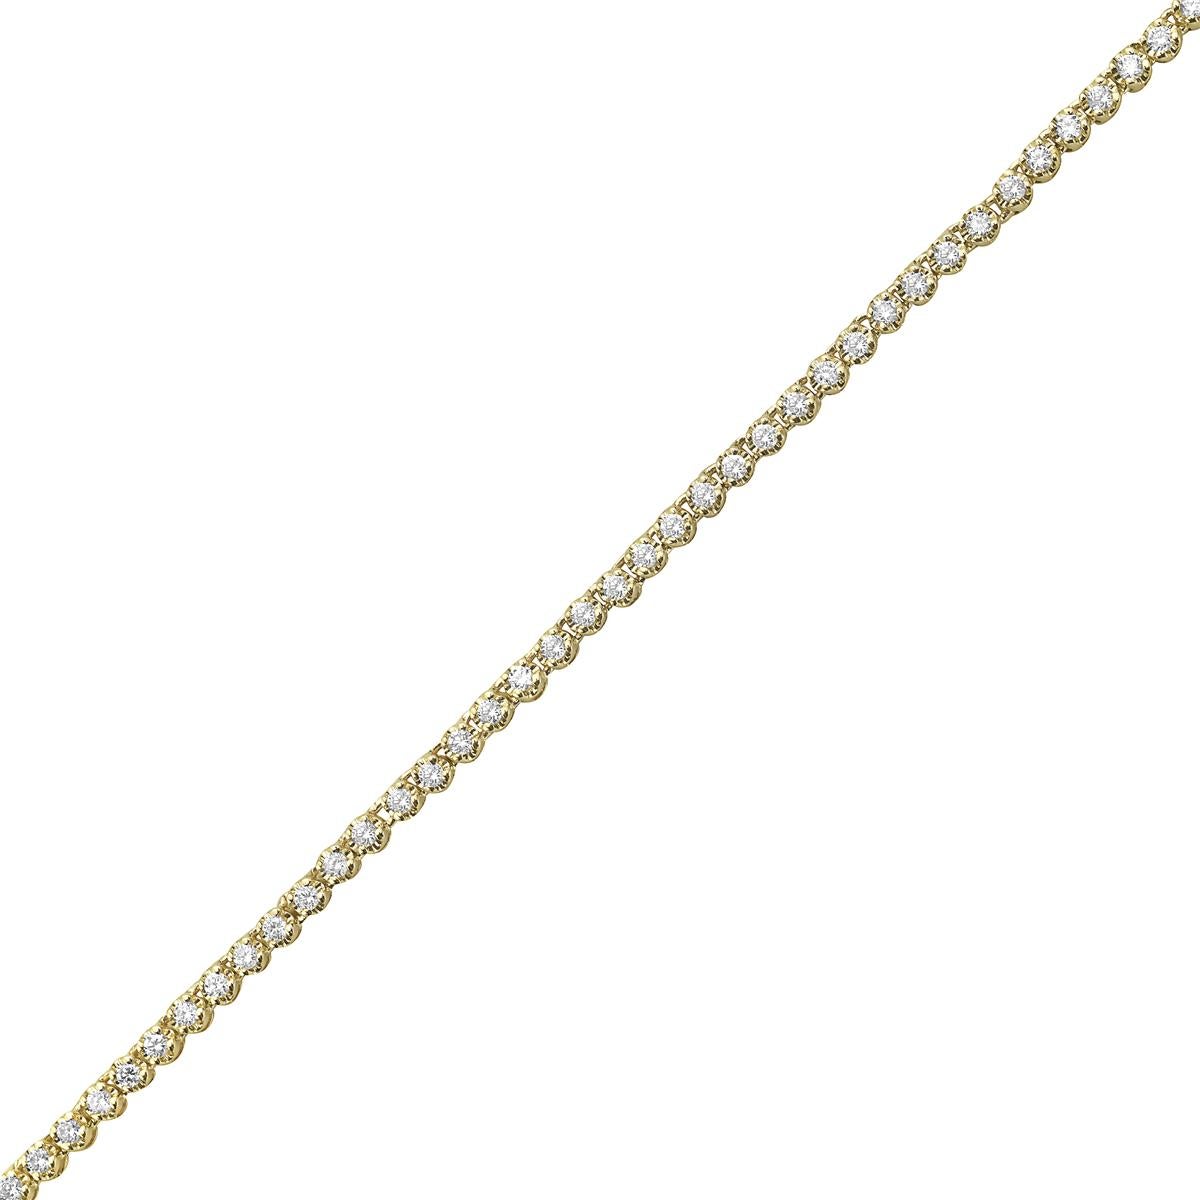 Exquisite Vivid Diamonds Straight Line Diamant-Tennis-Halskette in 14K Gelbgold, mit 192 runden Diamanten im Brillantschliff mit einem Gewicht von 1,96 Karat, Farbe GH, Reinheit SI1-SI2. Jeder Diamant wurde sorgfältig ausgewählt, perfekt aufeinander